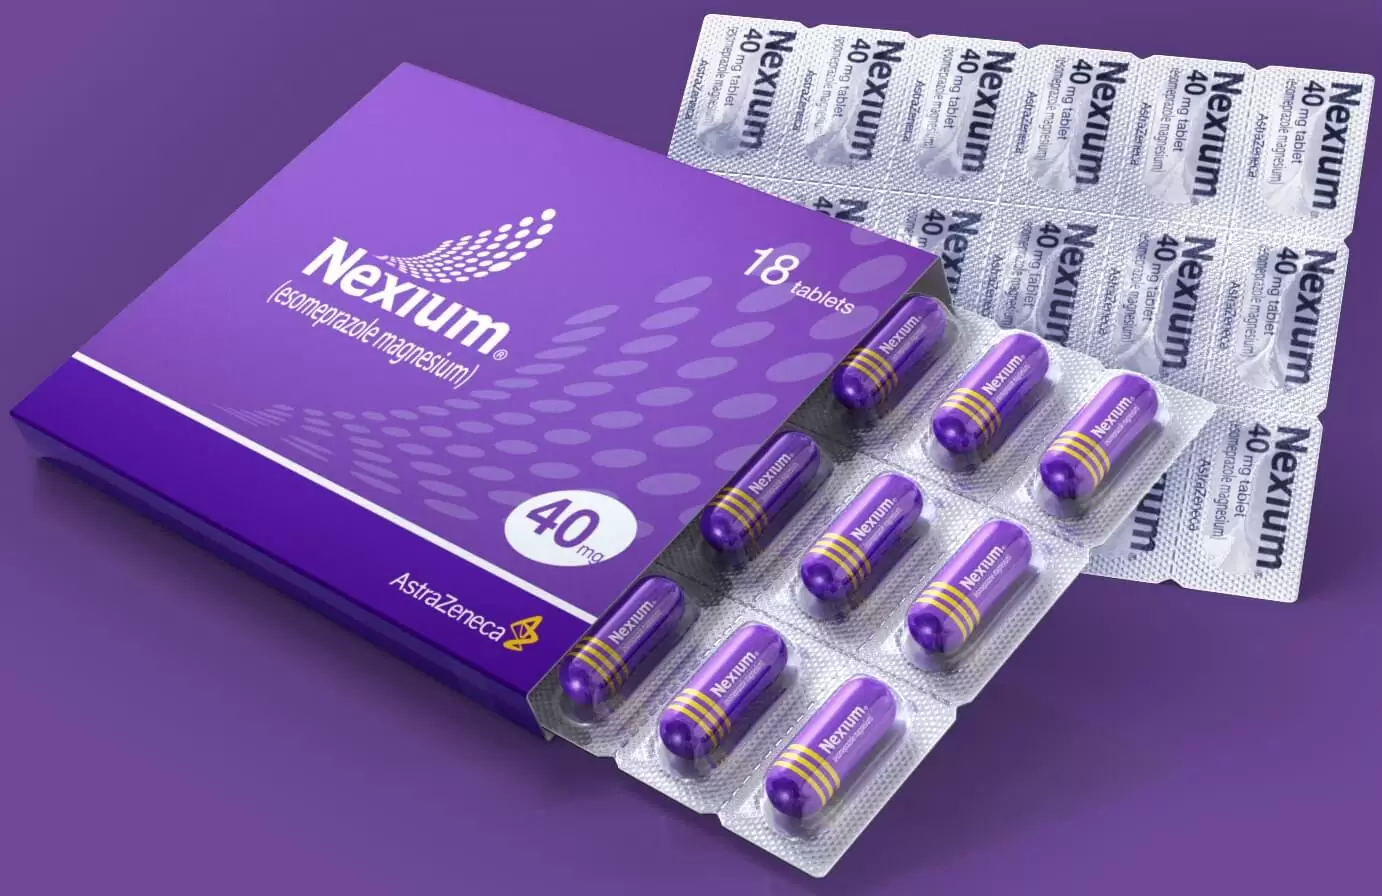 لماذا يستخدم دواء nexium